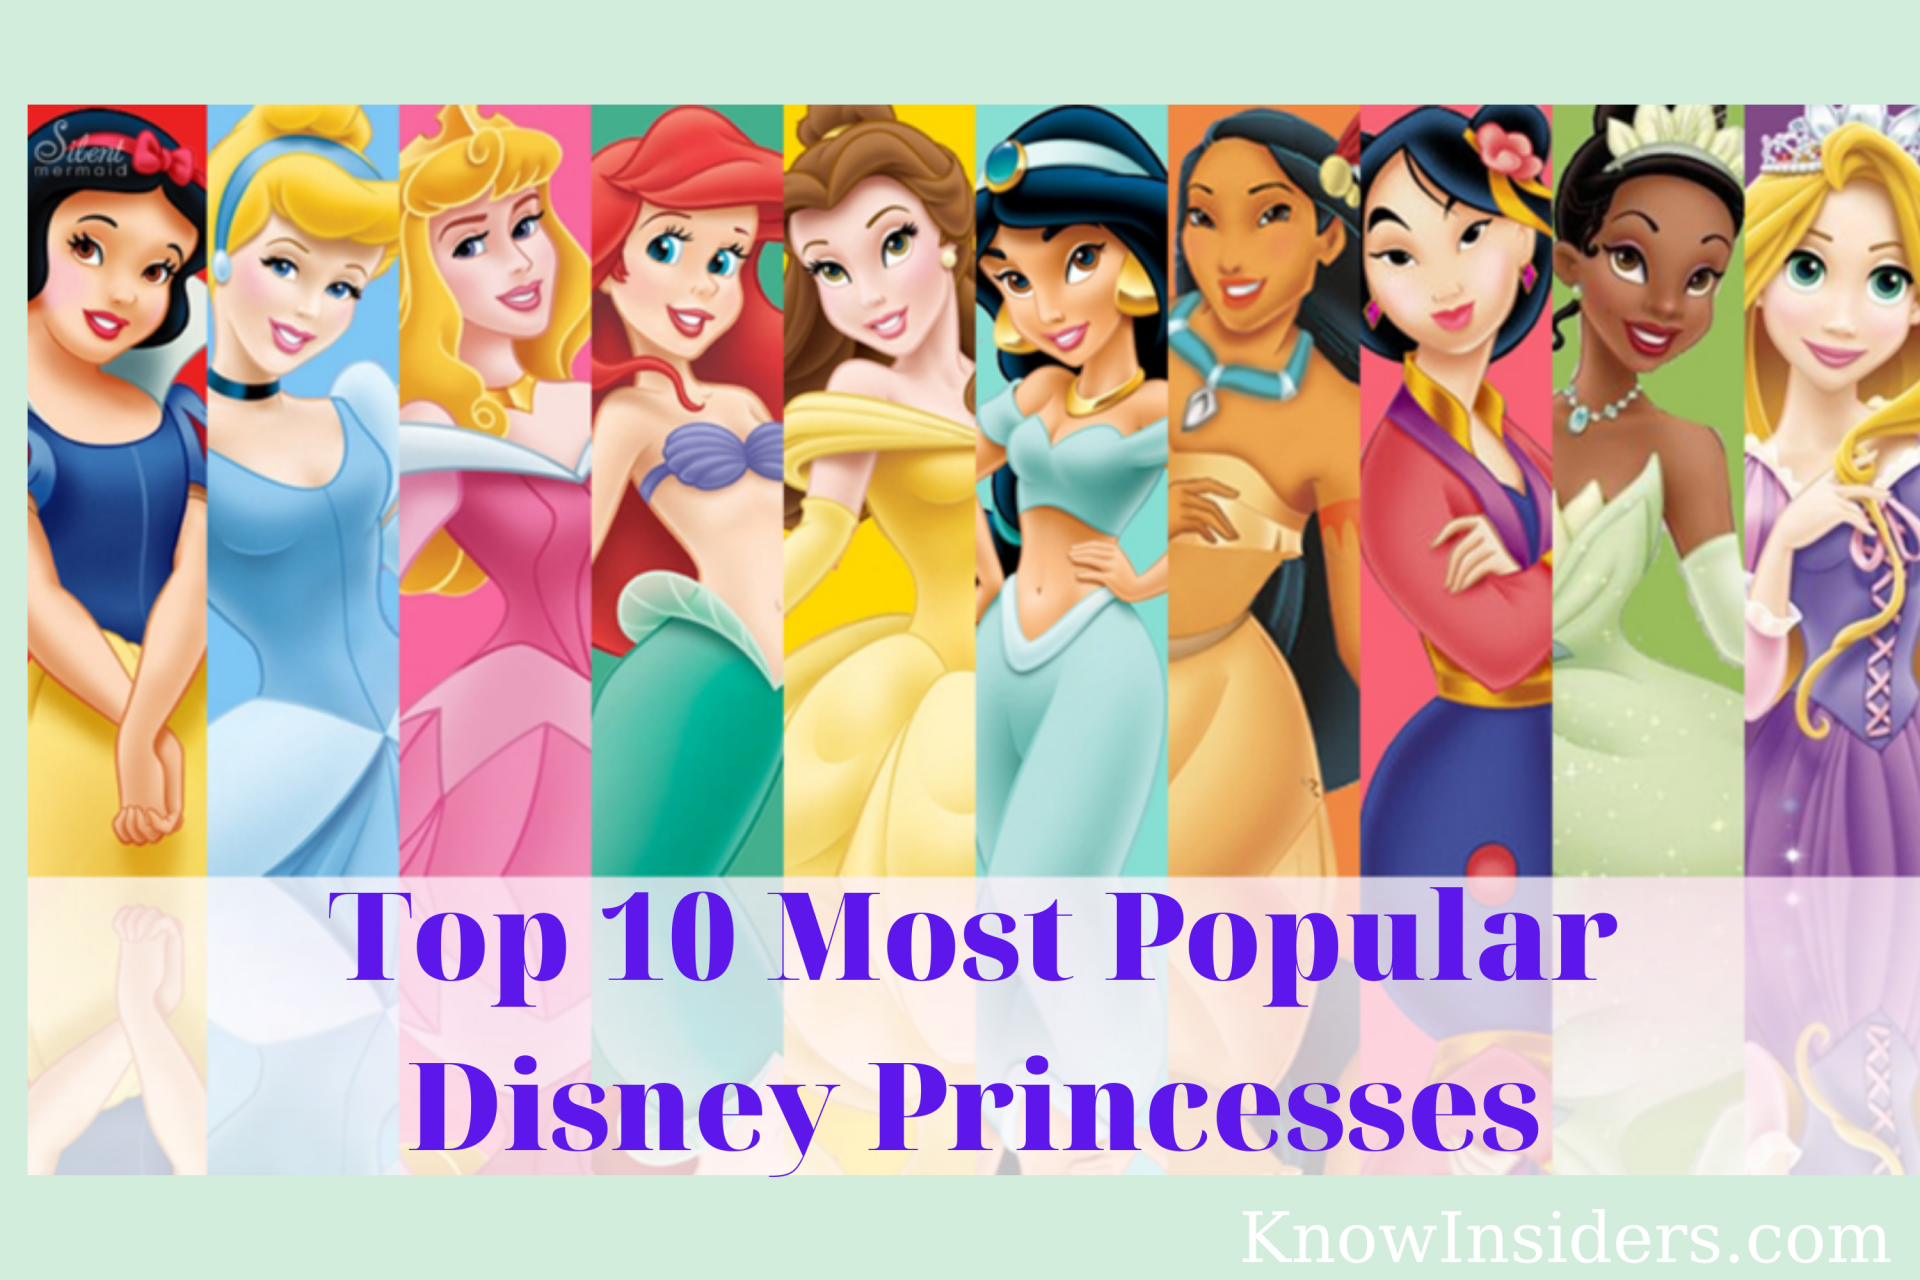 Top 10 Most Popular Disney Princesses